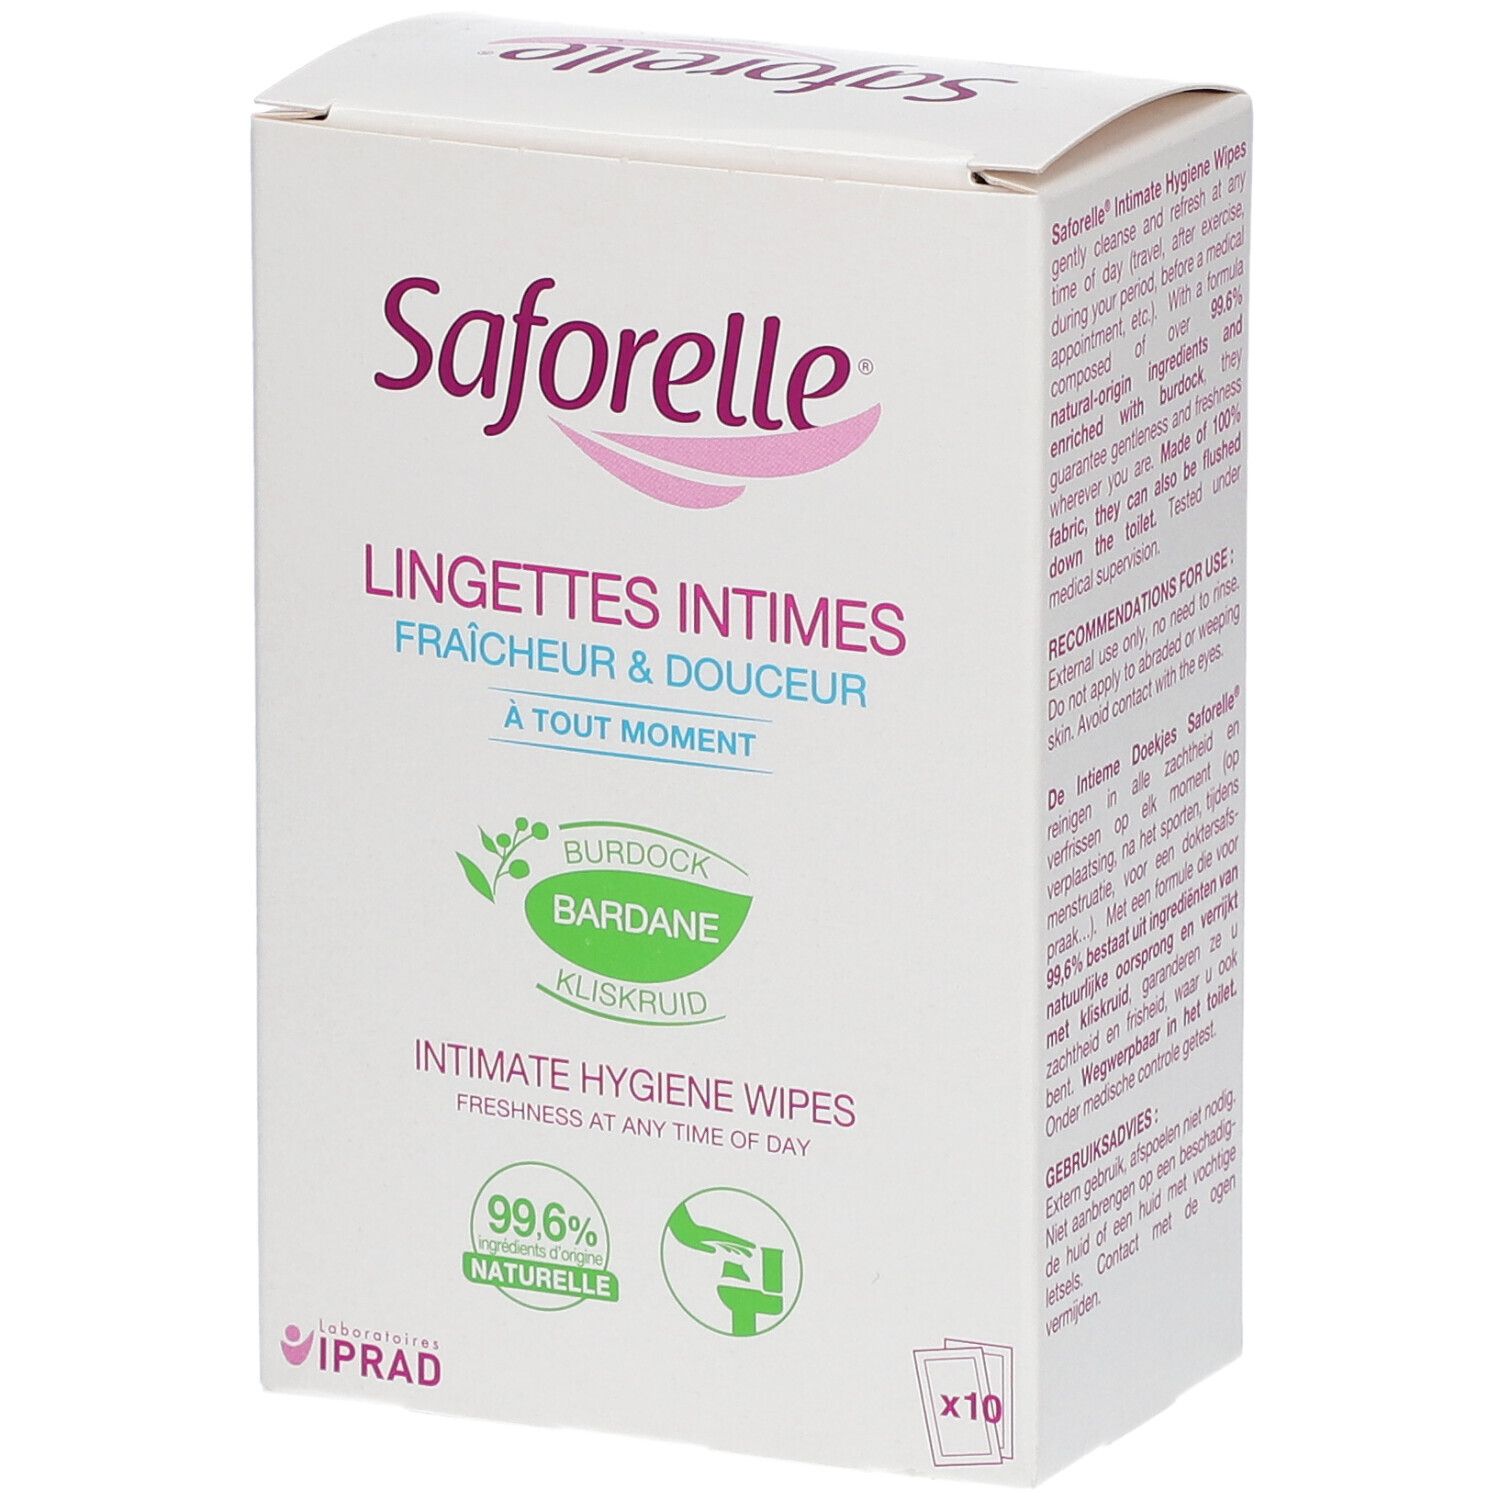 Saforelle® Lingettes Intimes Fraîcheur & Douceur